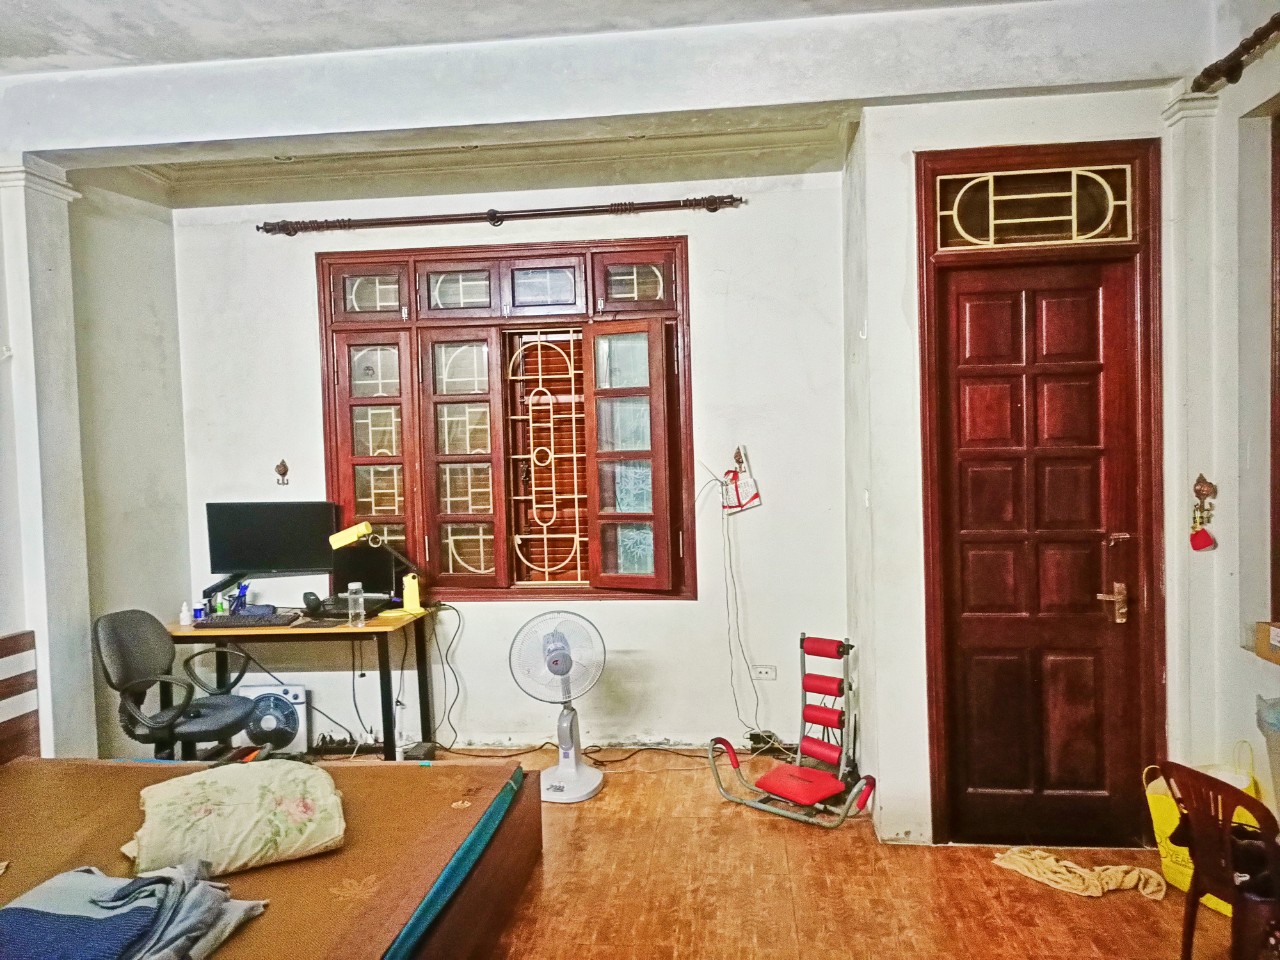 Chính chủ bán nhà kiểu Biệt Thự nhỏ tại Hà Nội 80m2 sổ đỏ 12.5 tỷ. lh:0905861688 - Ảnh 3